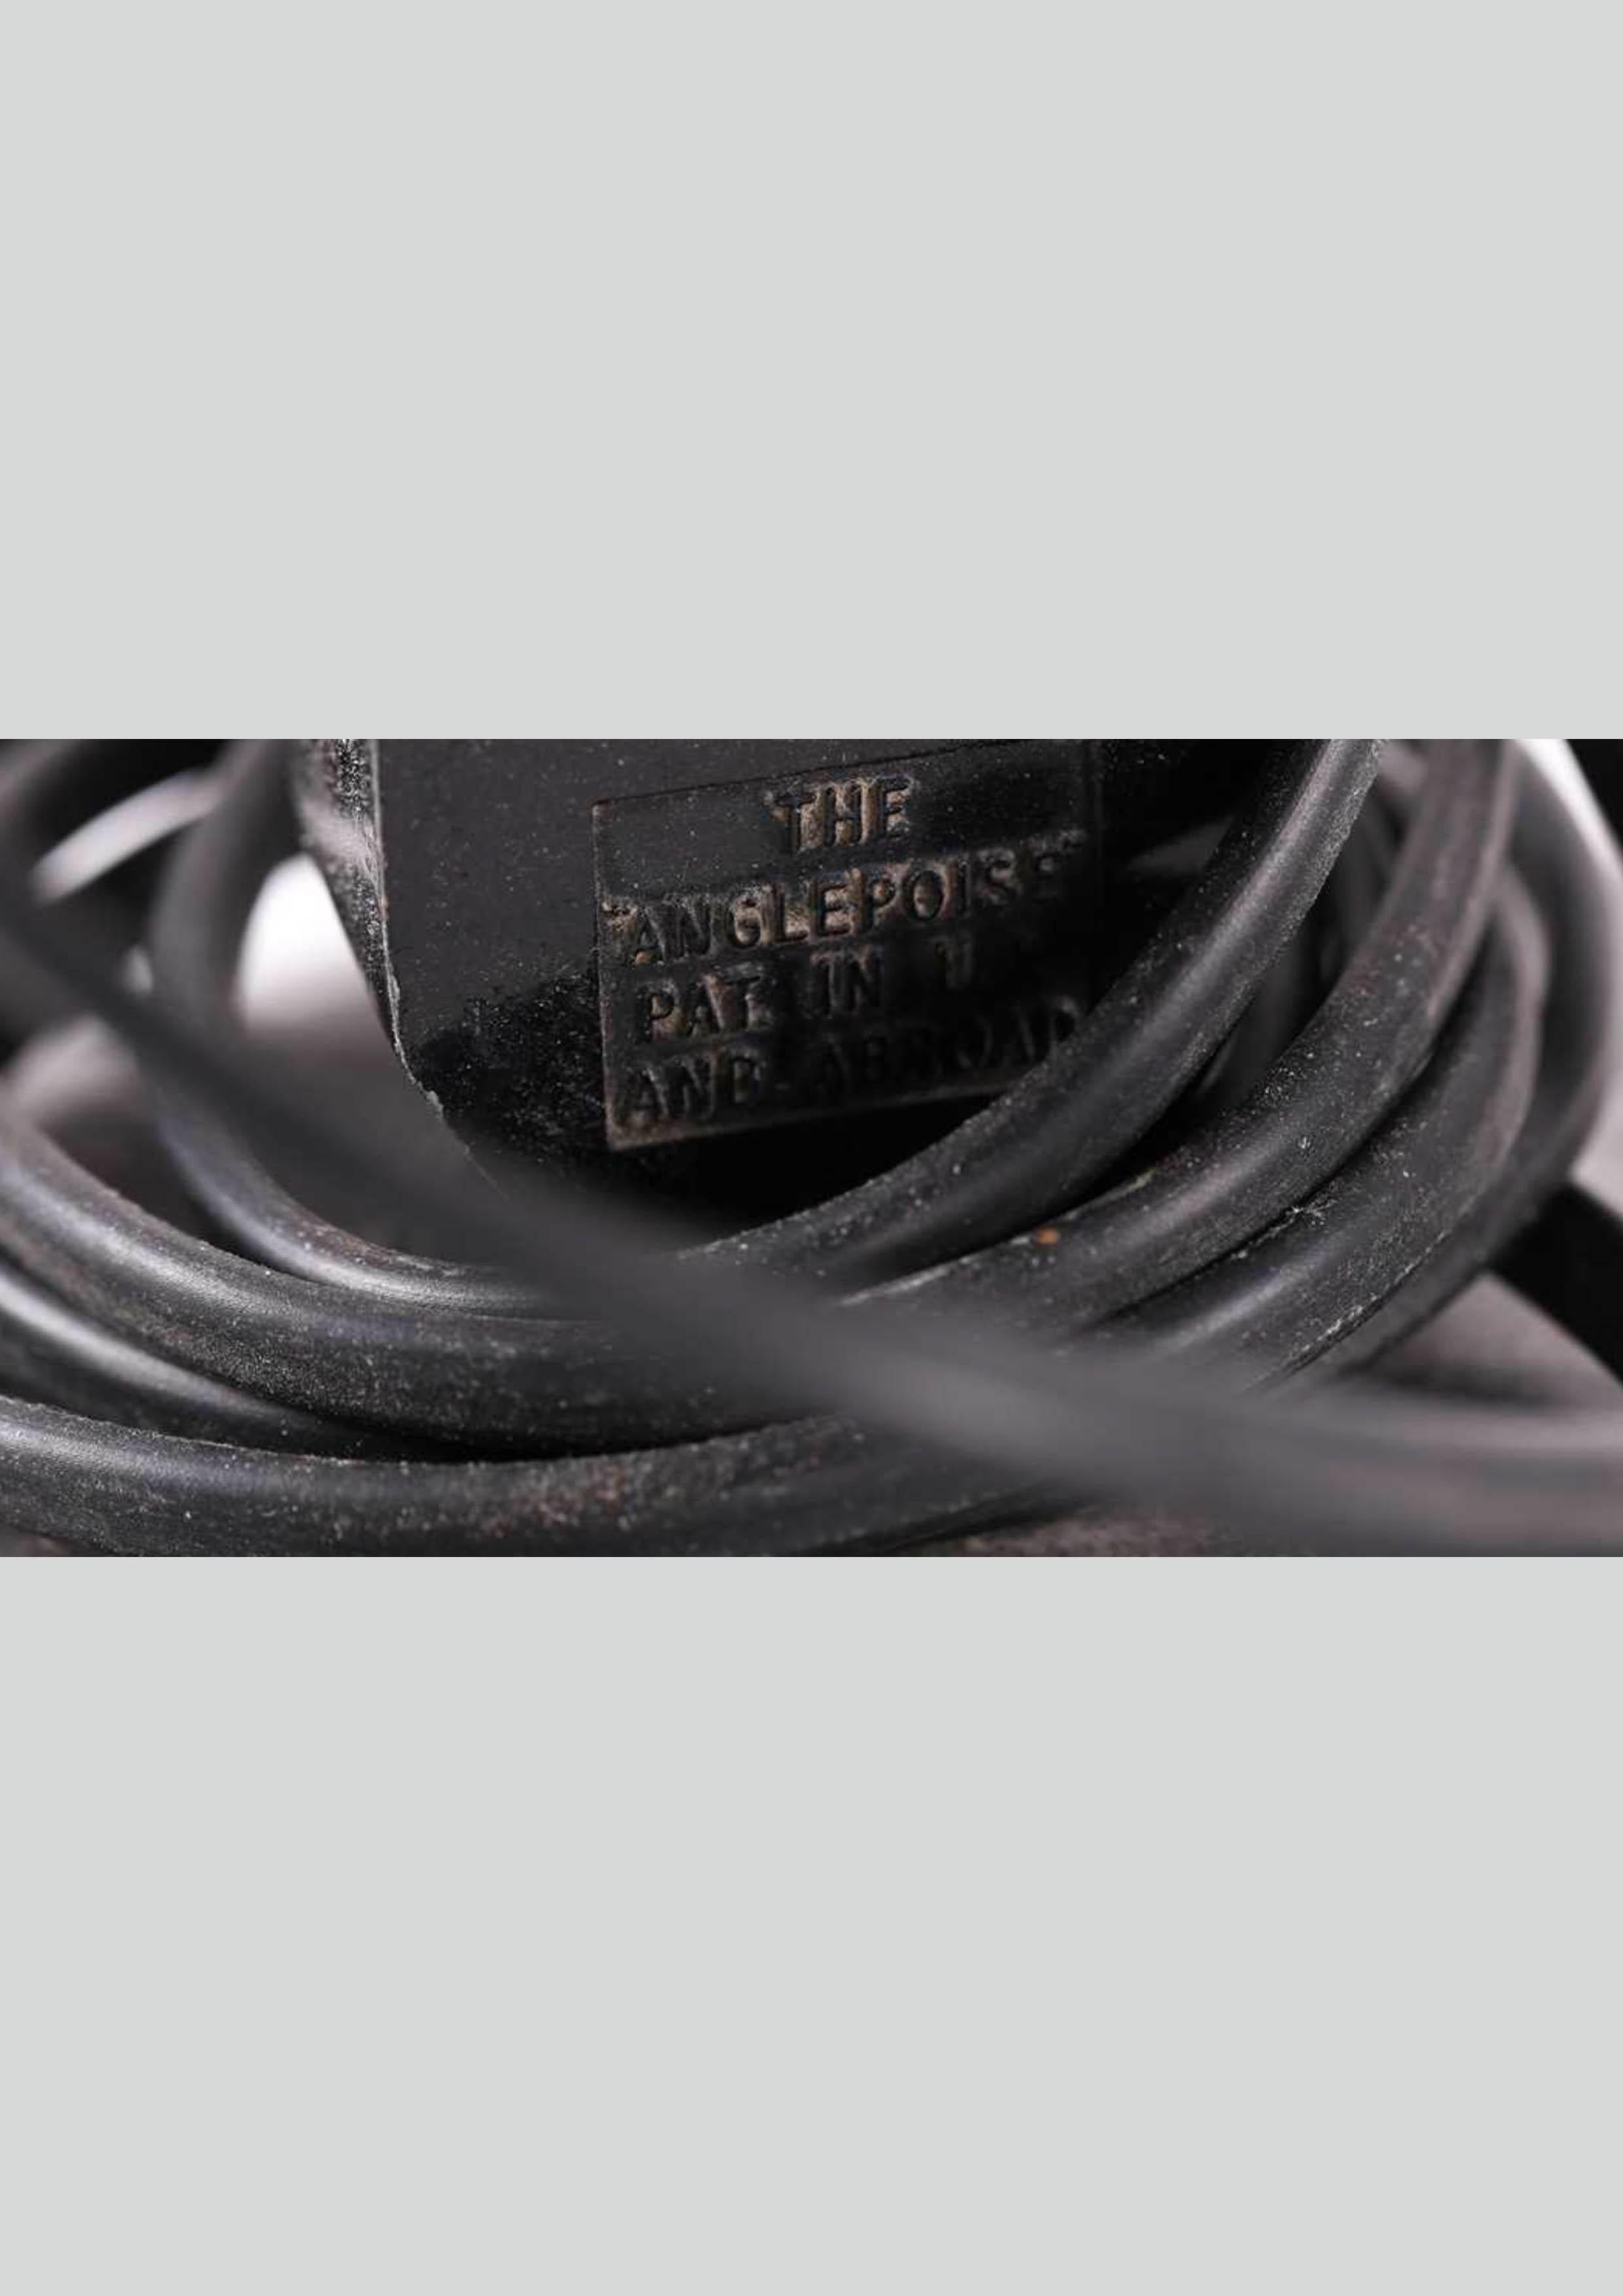 Herbert Terry Anglepoise Modell 1227 Schwarze zweistöckige bewegliche Schreibtischlampe, 1930er Jahre 

Modell 1227 (1938 - 1968)
- Hat einen zweistufigen Sockel mit einer Stahlabdeckung.
- Die Gabeln wurden hauptsächlich als Ganzes gegossen mit